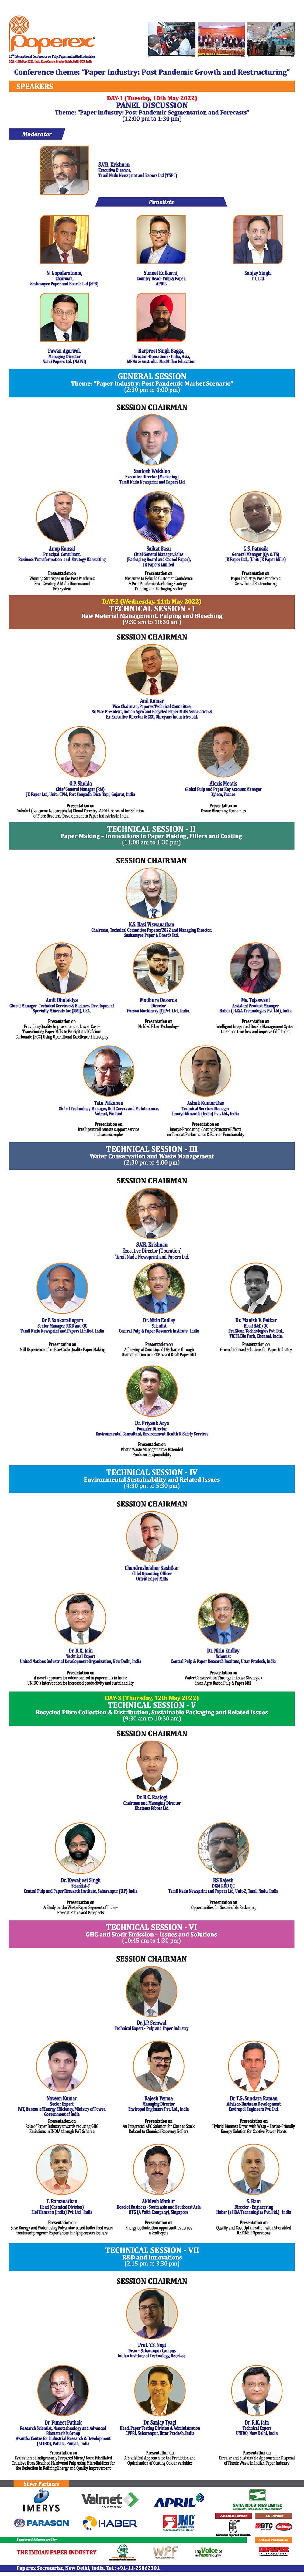 Paperex India Speakers